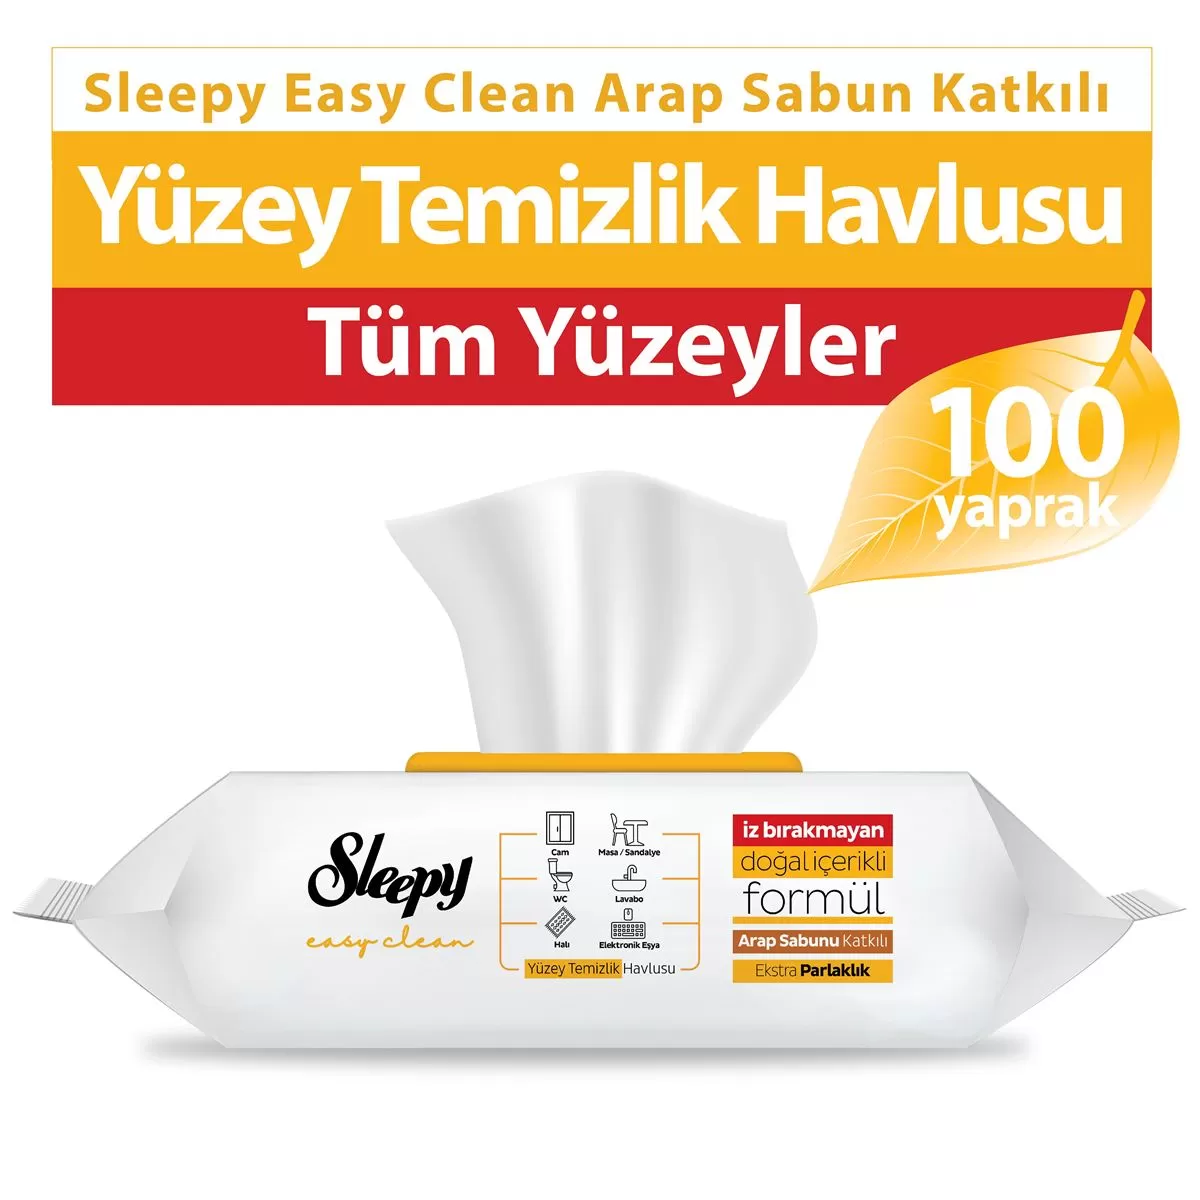 Sleepy Easy Clean Yüzey Temizlik Havlusu Arap Sabun Katkılı 100 Yaprak 3 Paket